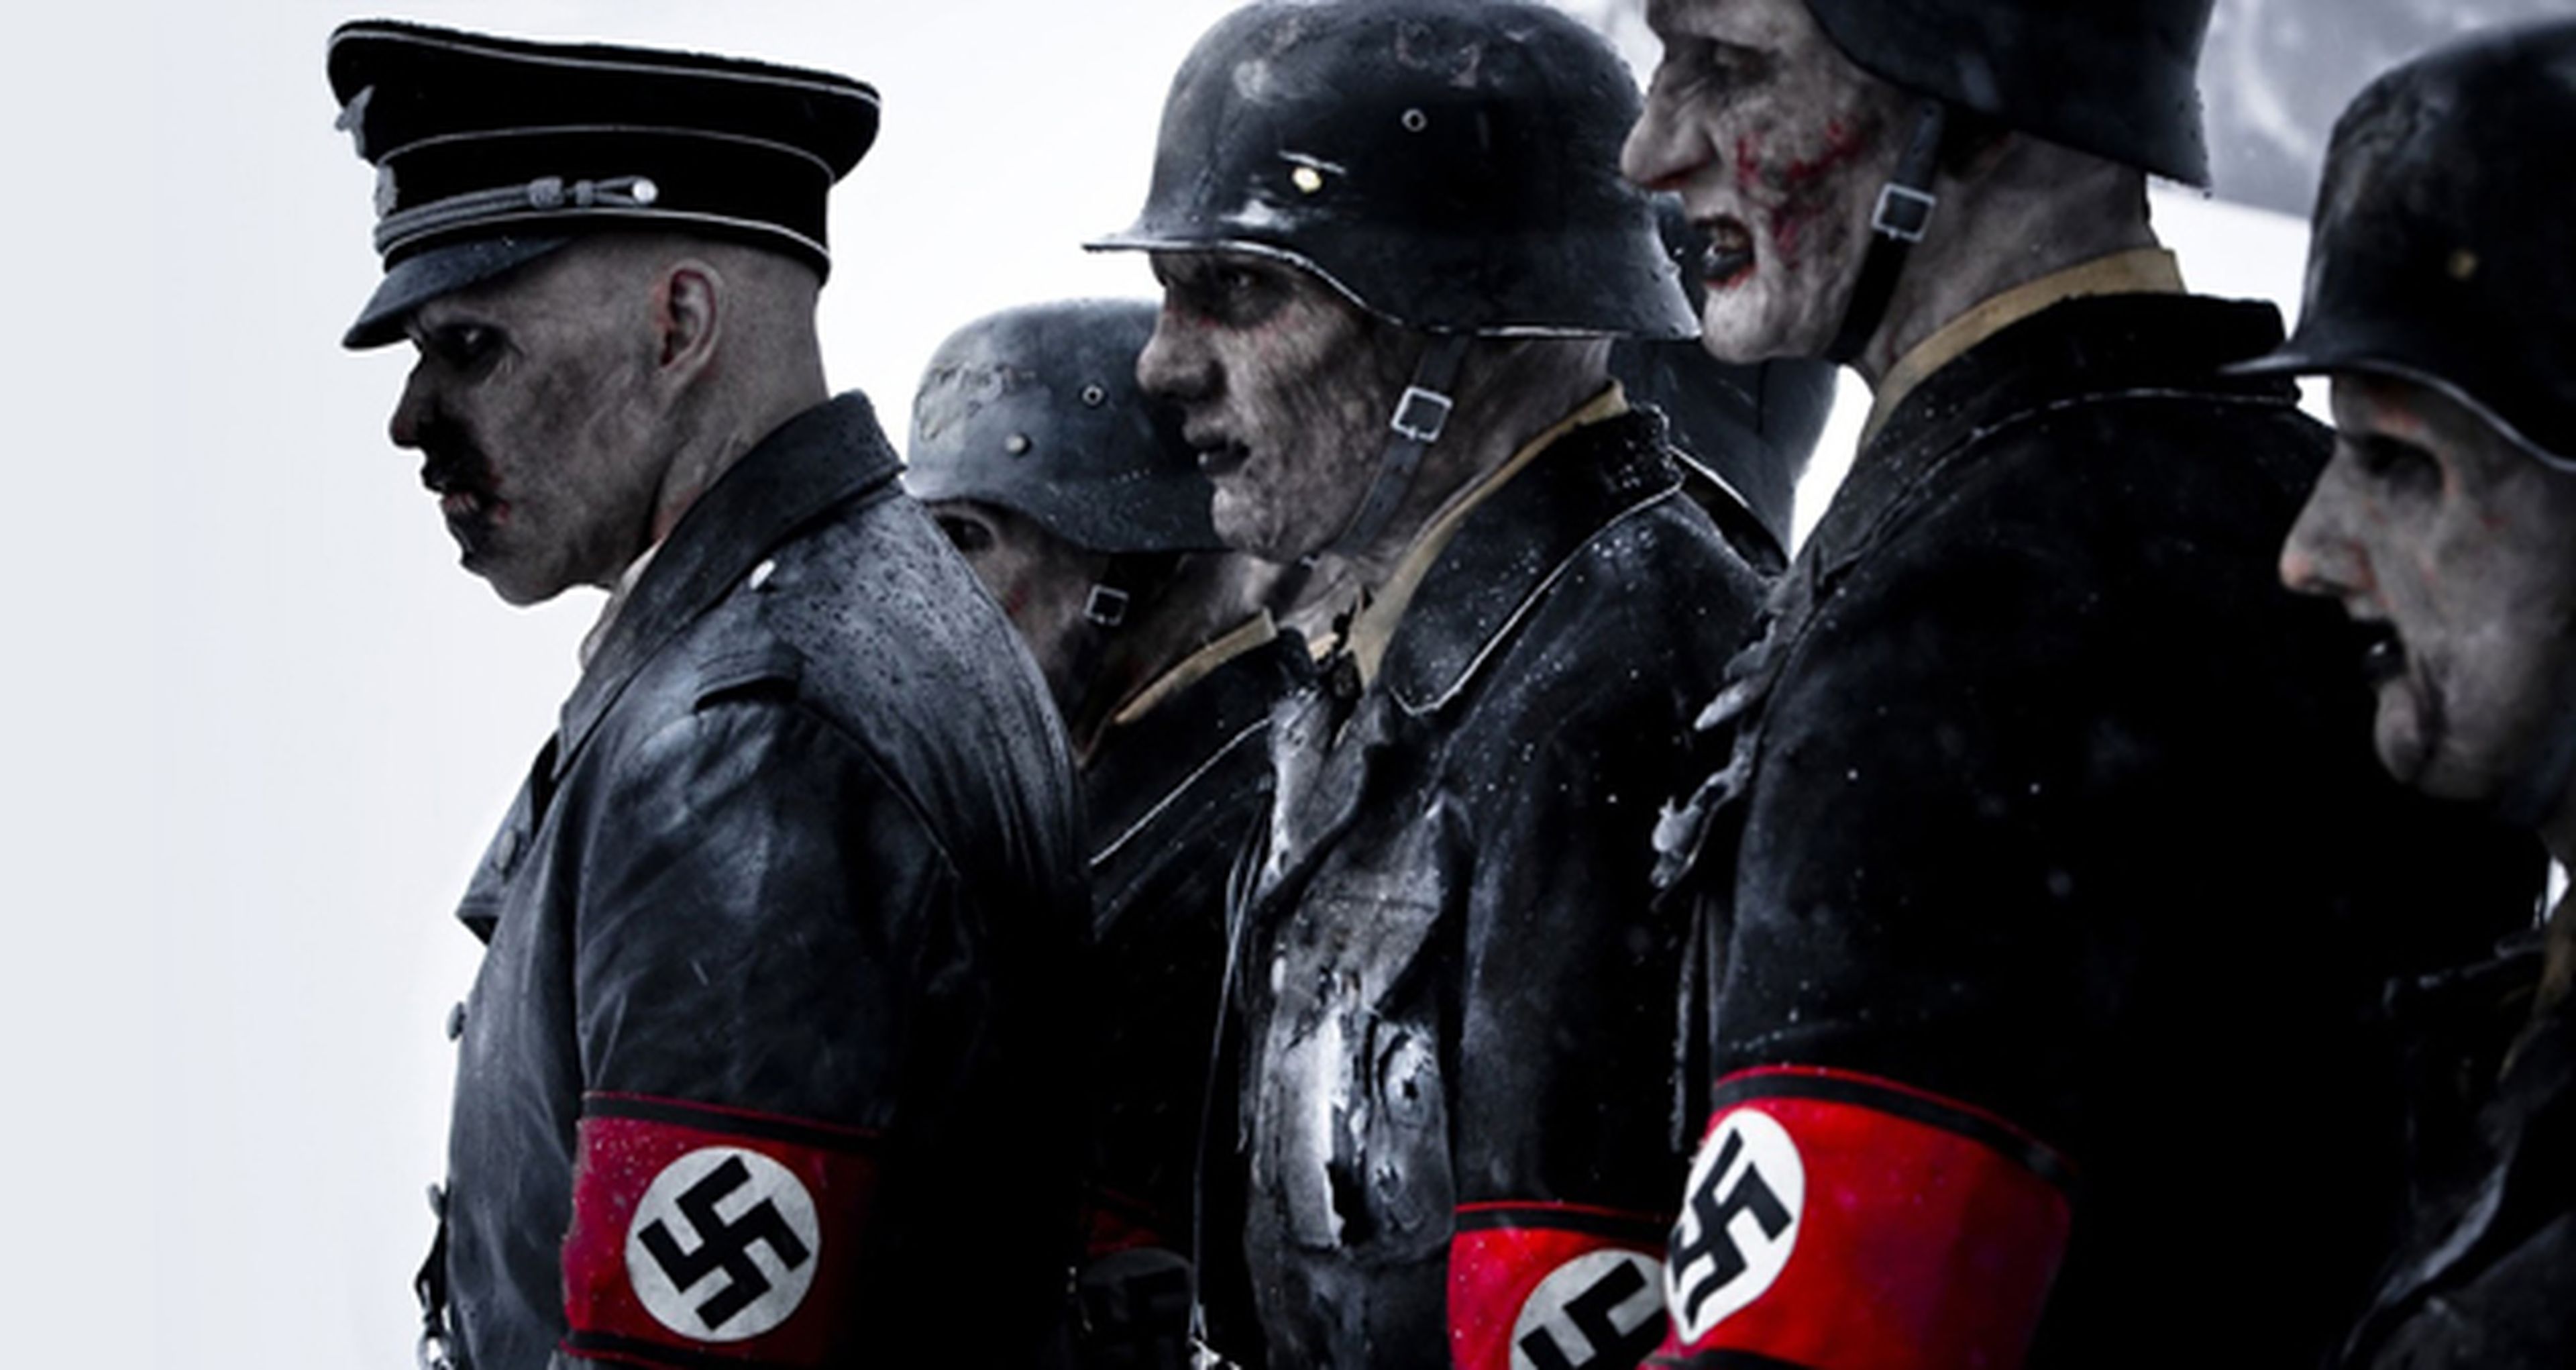 Wirkola confirma que habrá secuela de Zombis nazis